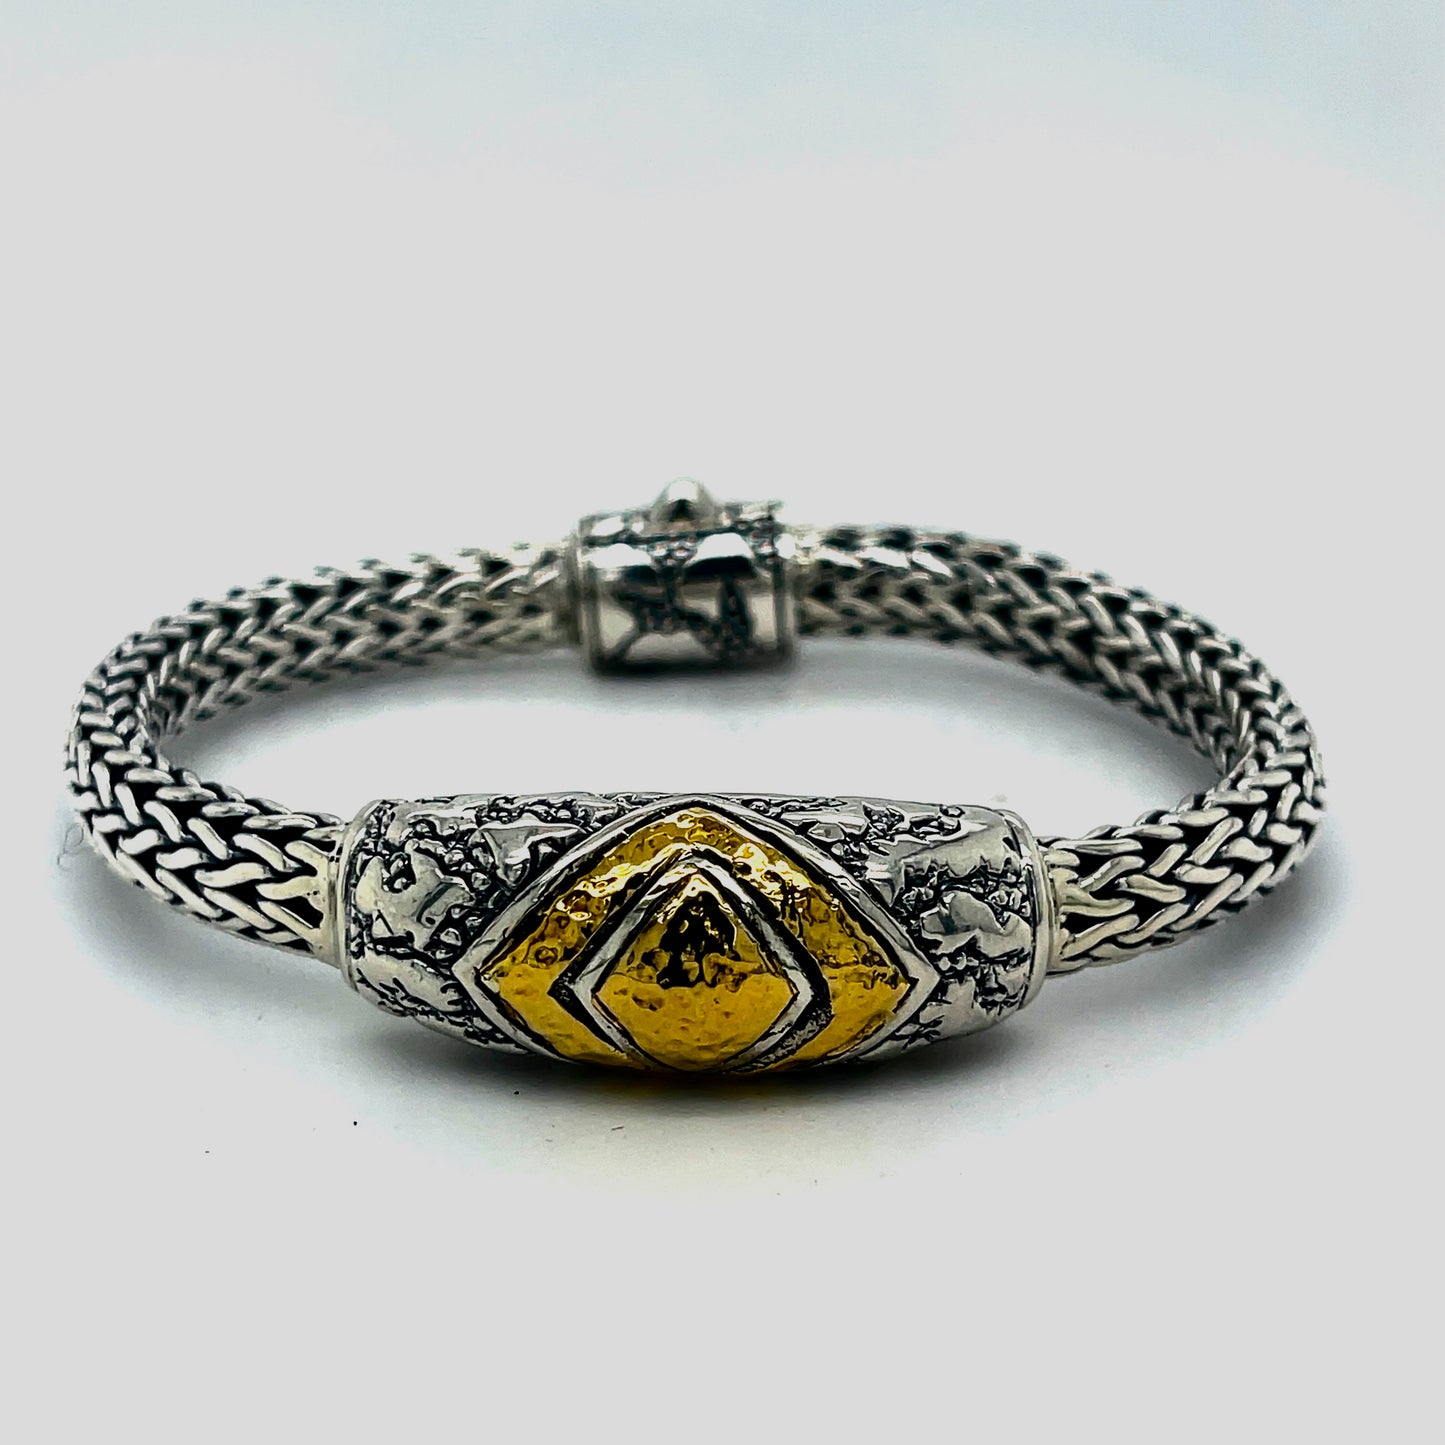 Silver gold link bracelet